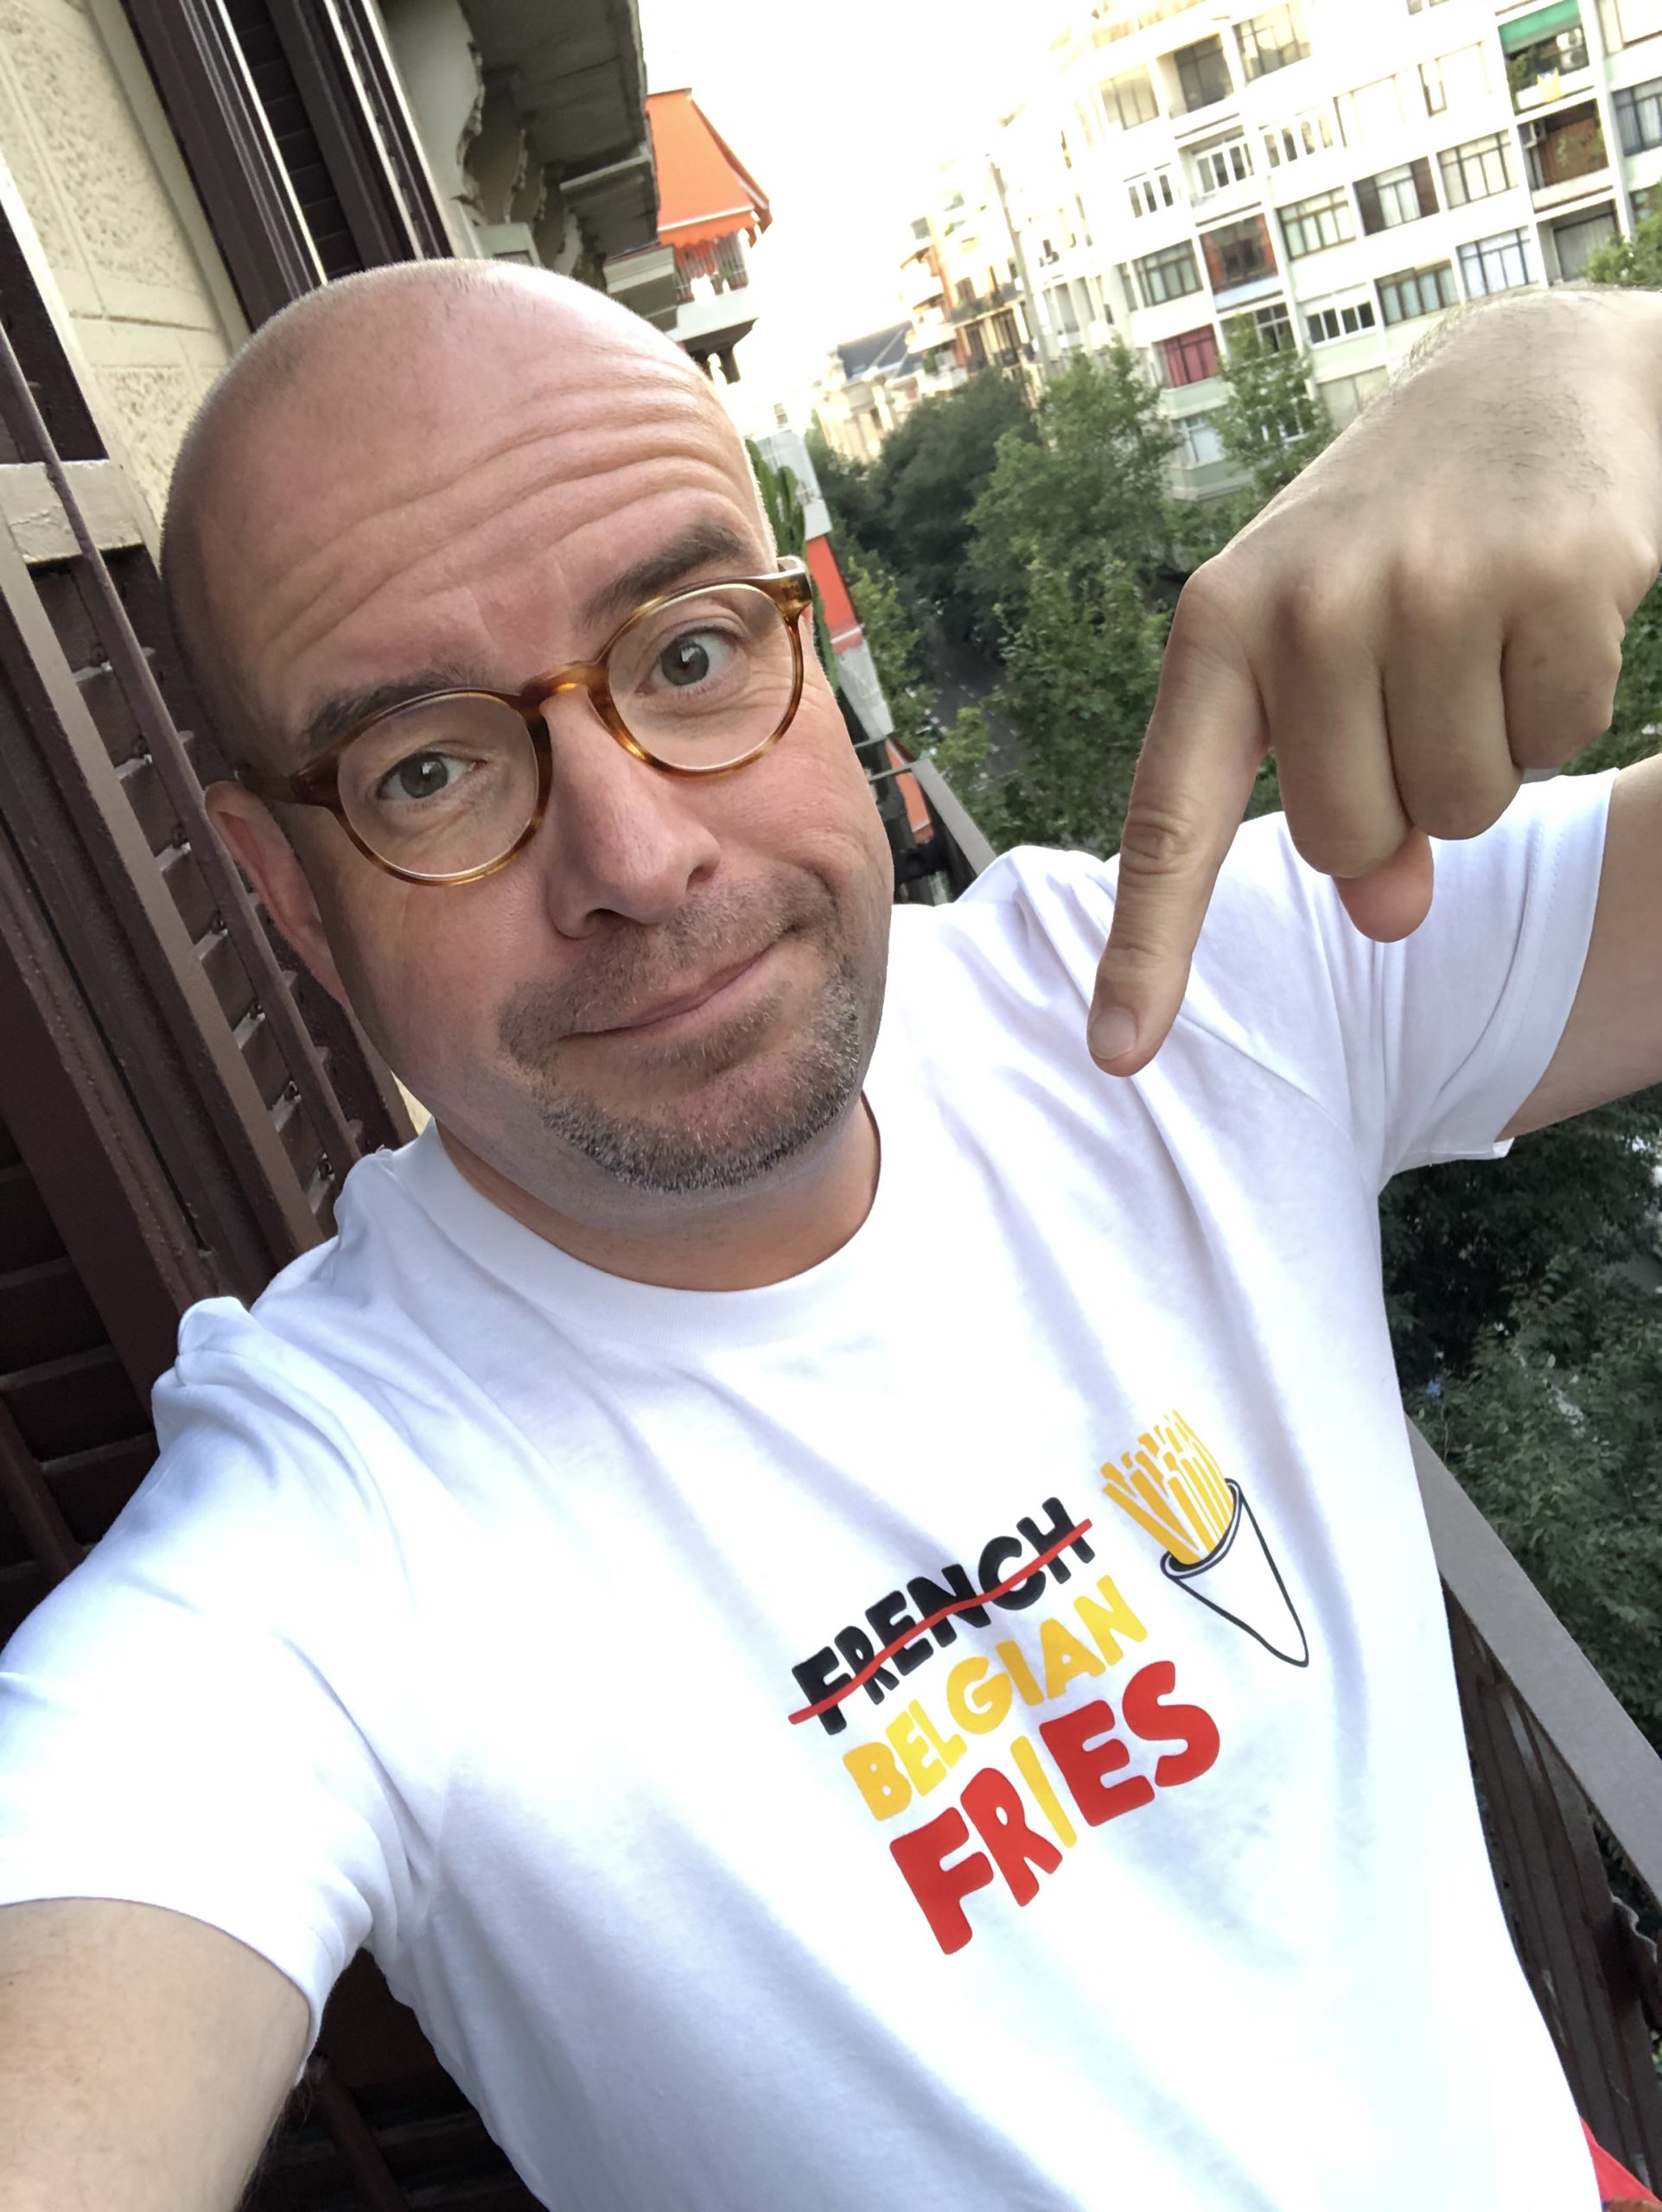 French fries day? Belgische frietjes dag, ja! Stem mee!